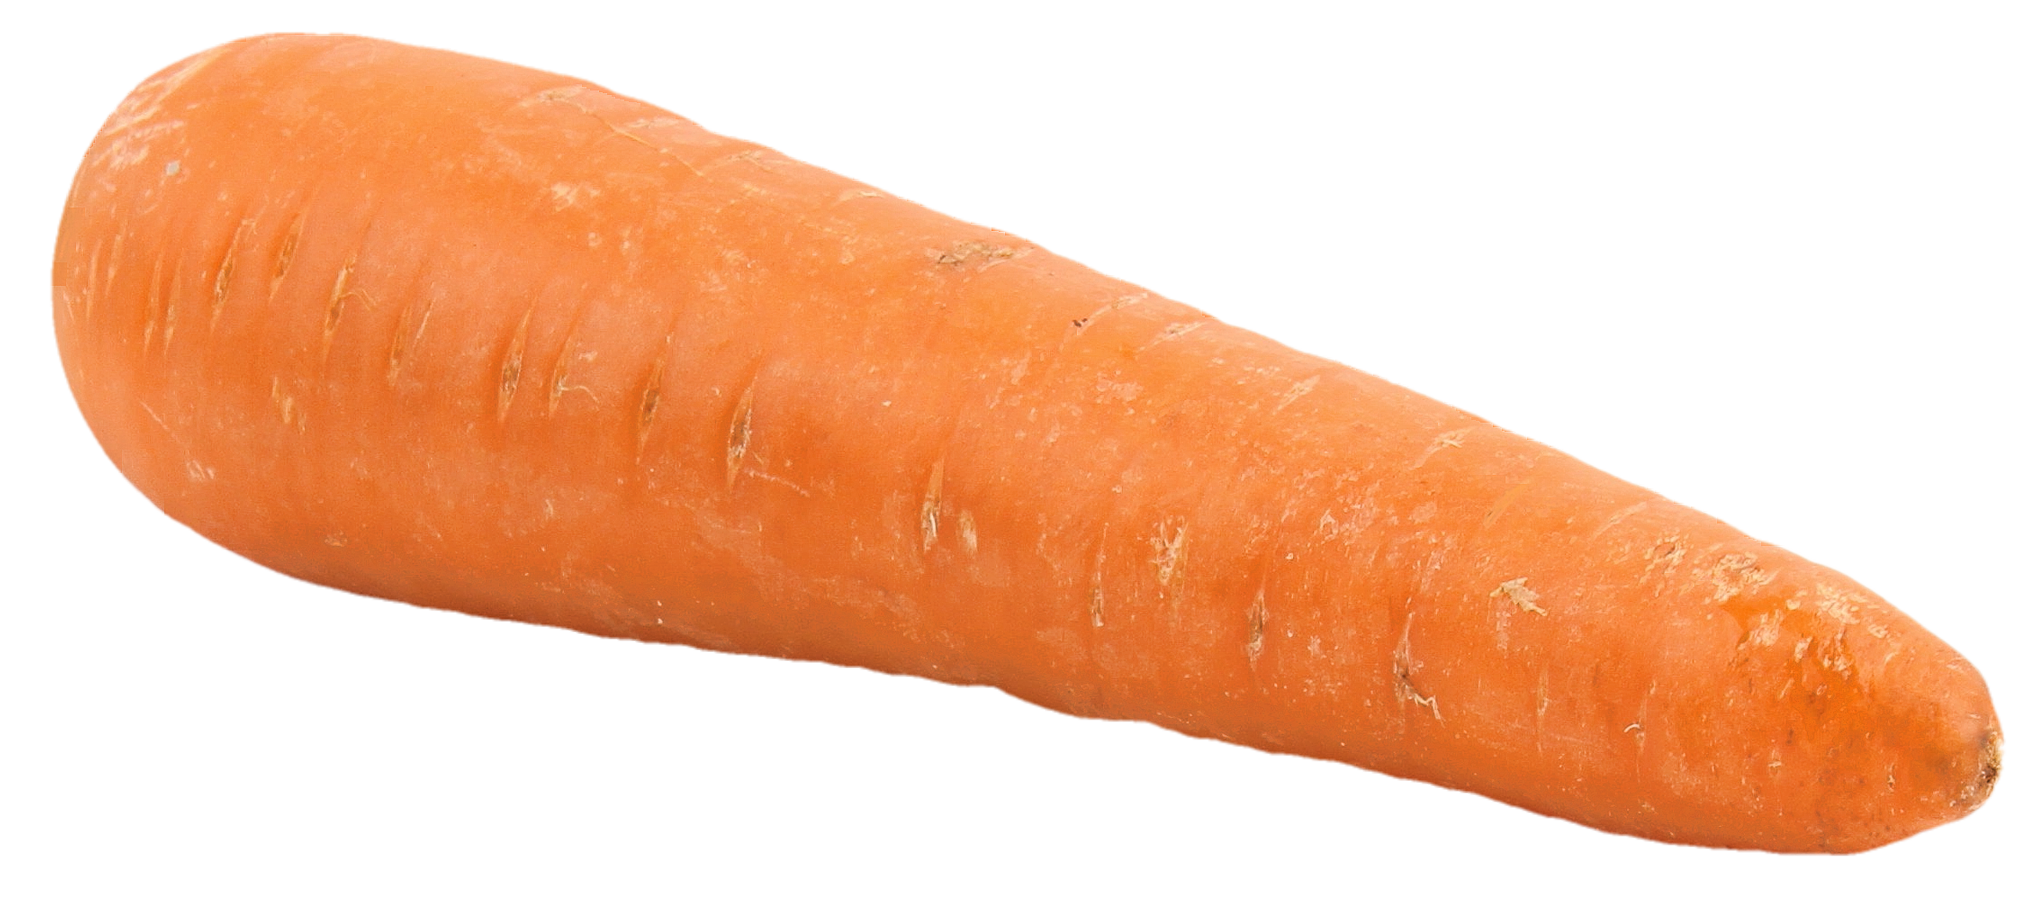 Big Carrot PNG Image